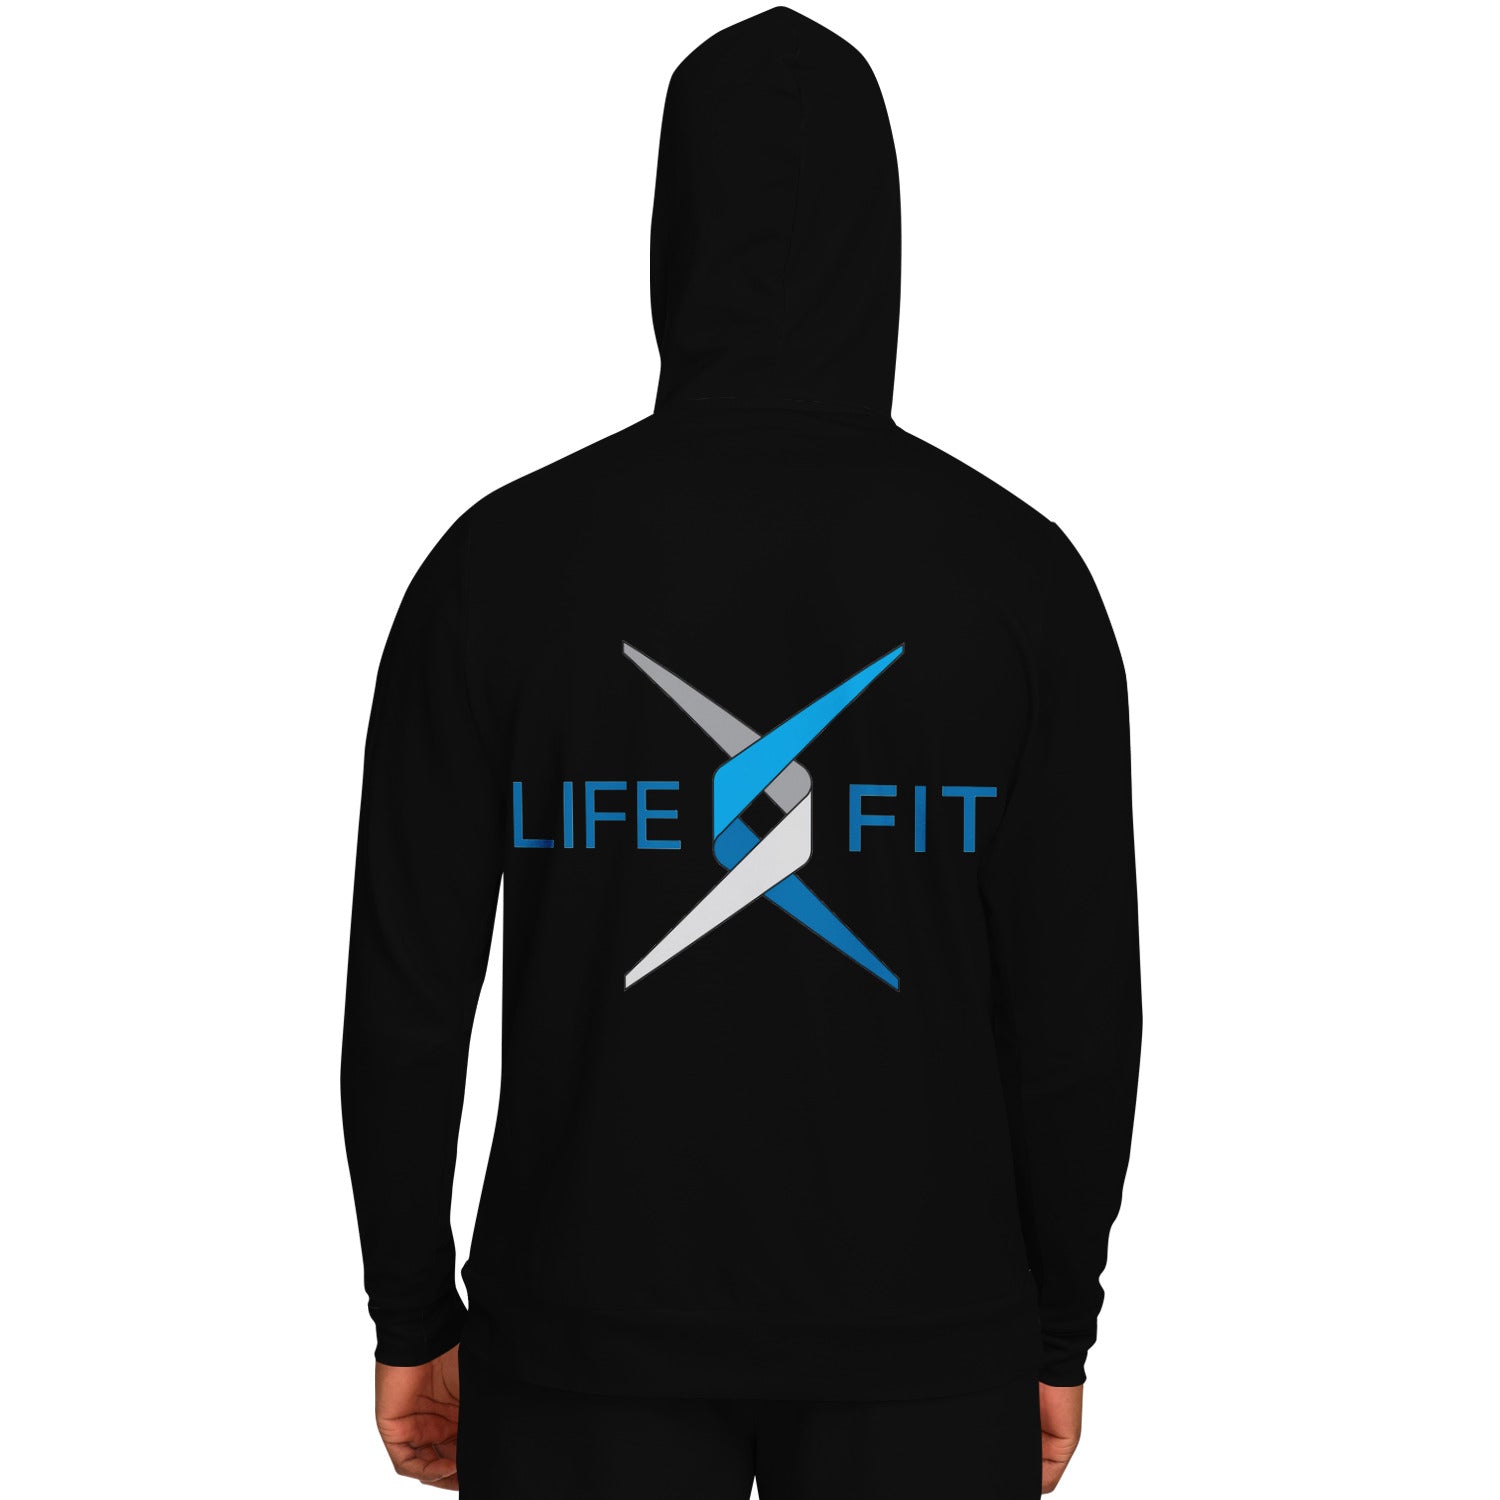 Lifefit hoodie